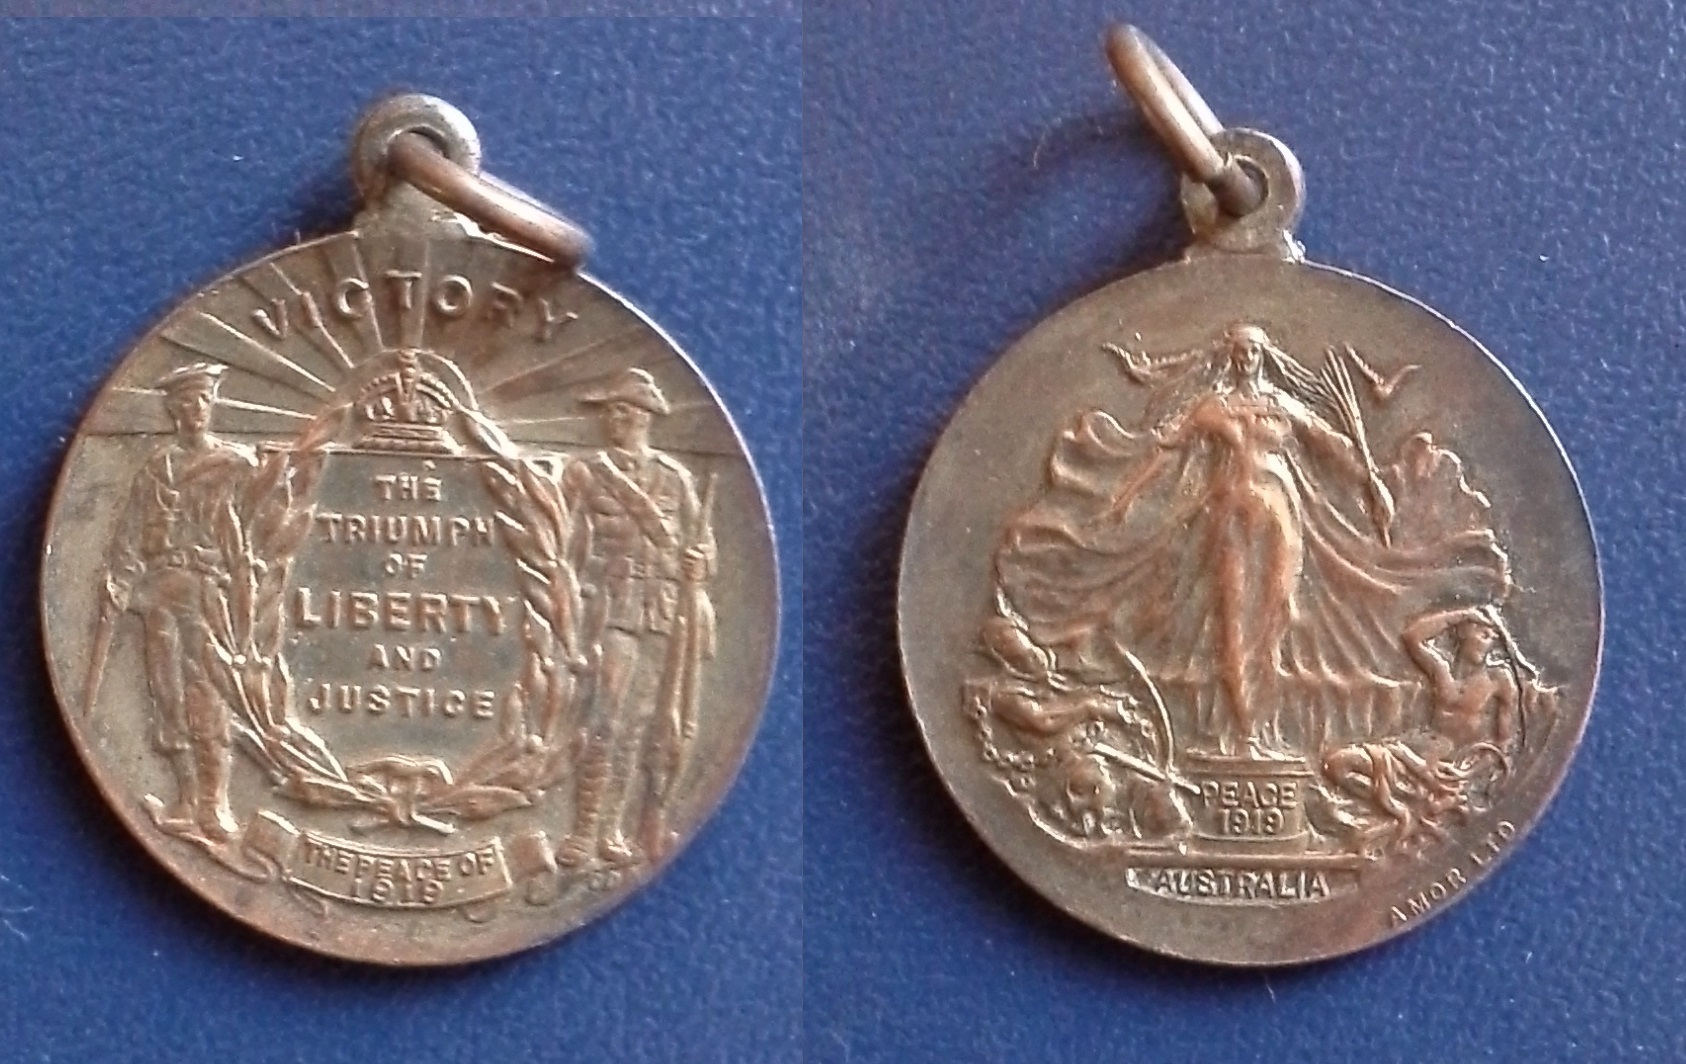 1919 Australia End of War Medal.jpg